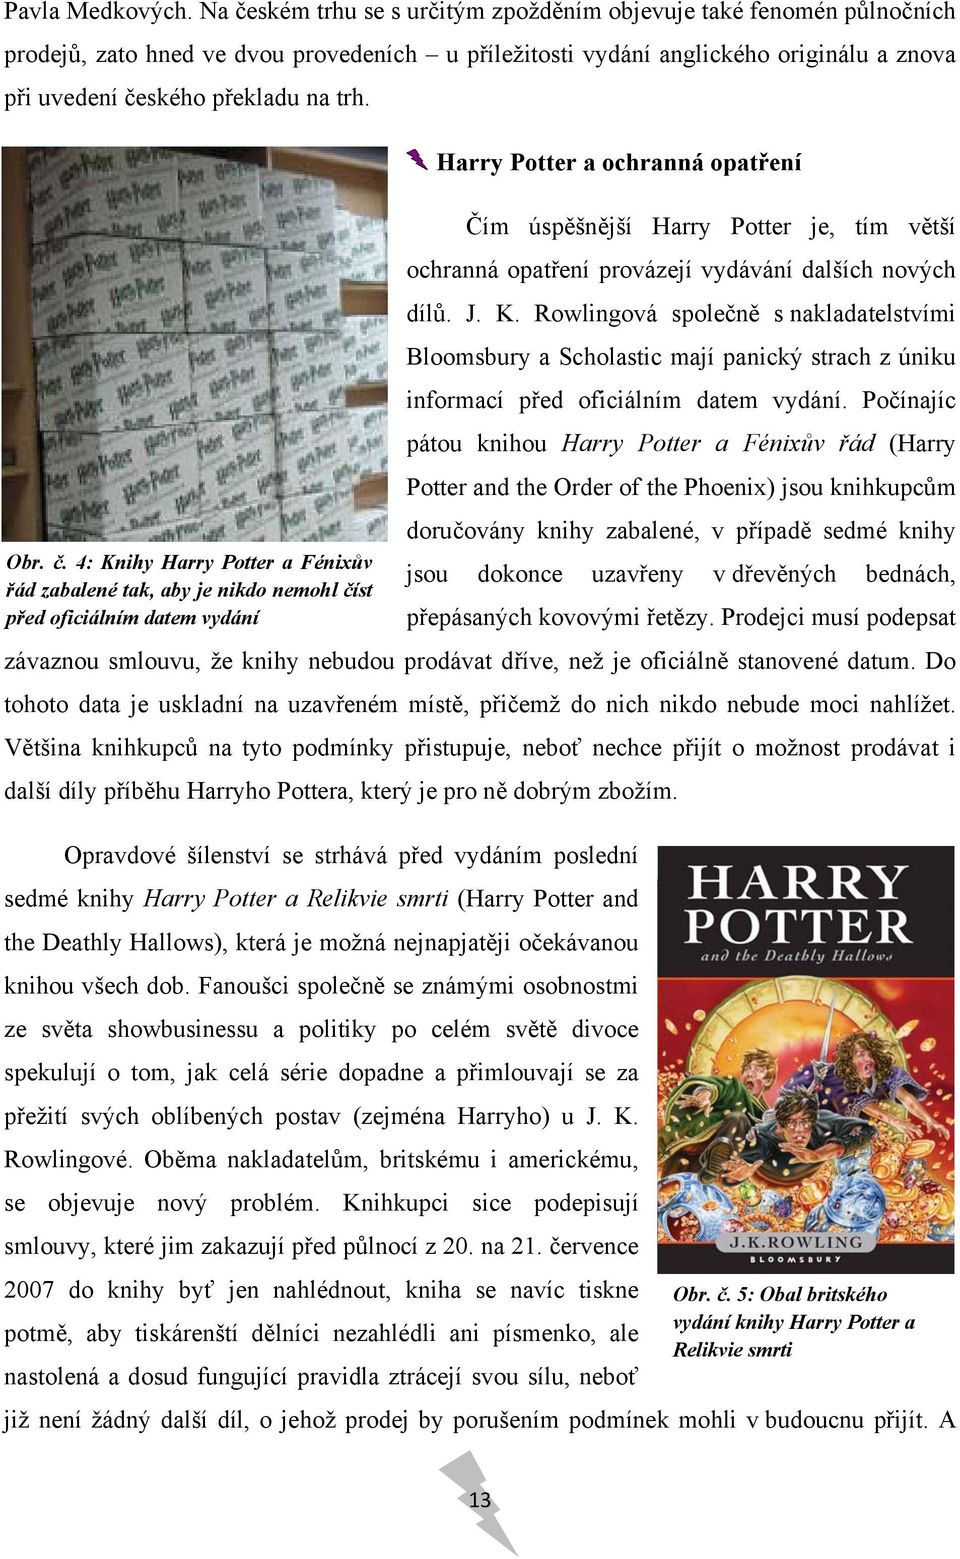 Harry Potter a ochranná opatření Čím úspěšnější Harry Potter je, tím větší ochranná opatření provázejí vydávání dalších nových dílů. J. K.